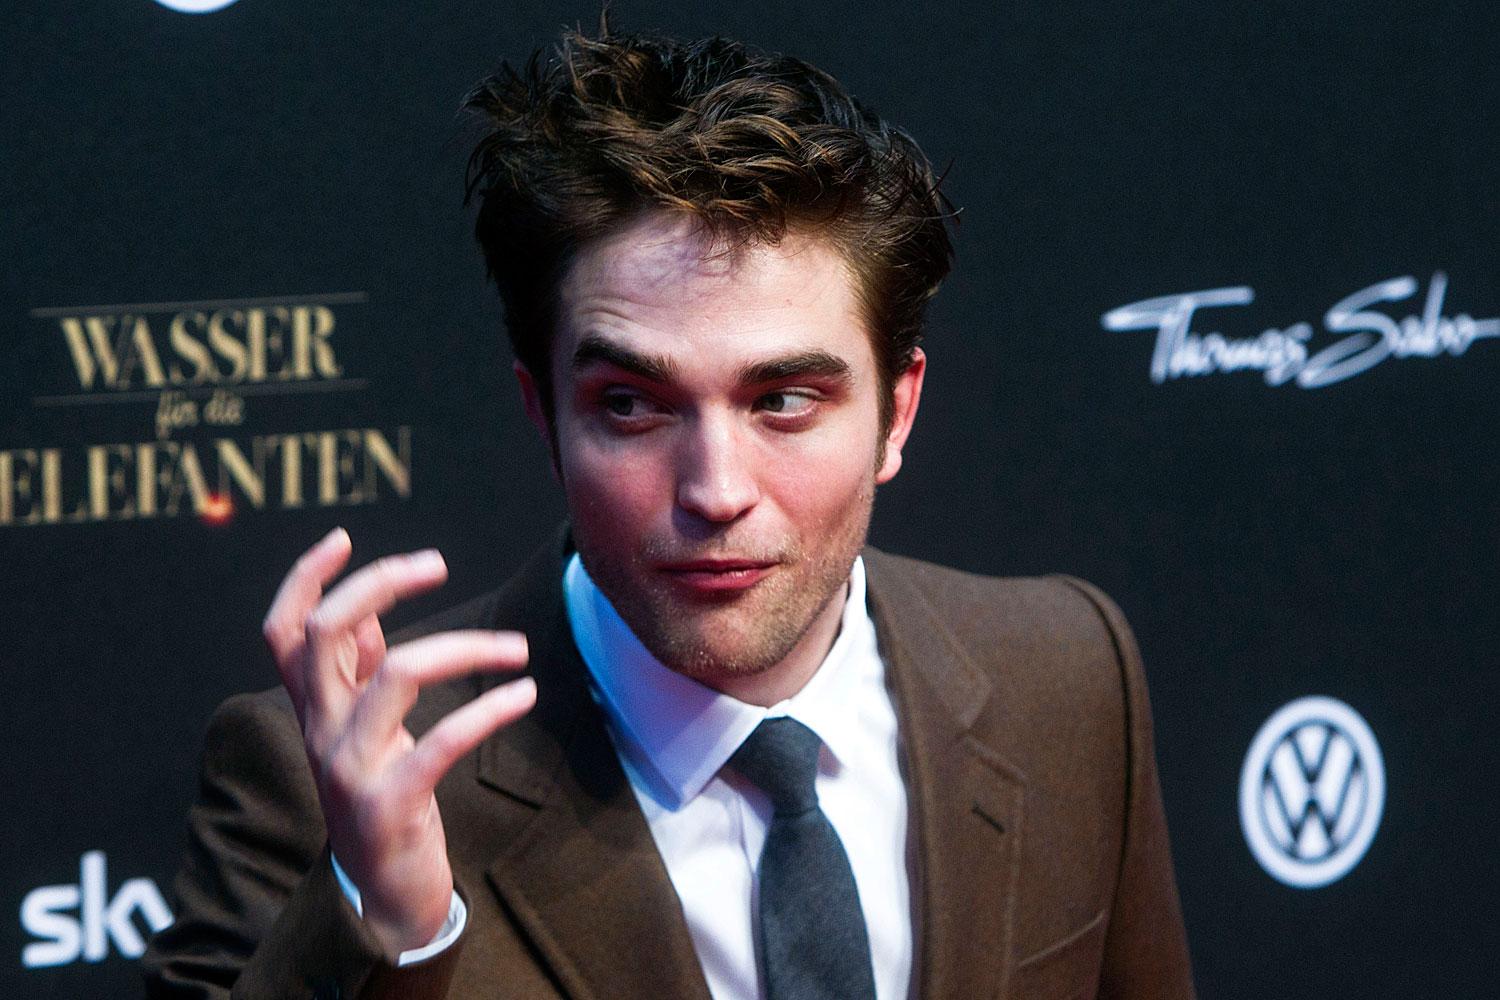 KAN INTE GÅ UT I dag har ”Breaking dawn – del 1” premiär. Något Robert Pattinson ser fram emot. ”Jag är extremt nyfiken på vad folk kommer att tycka”, säger han.